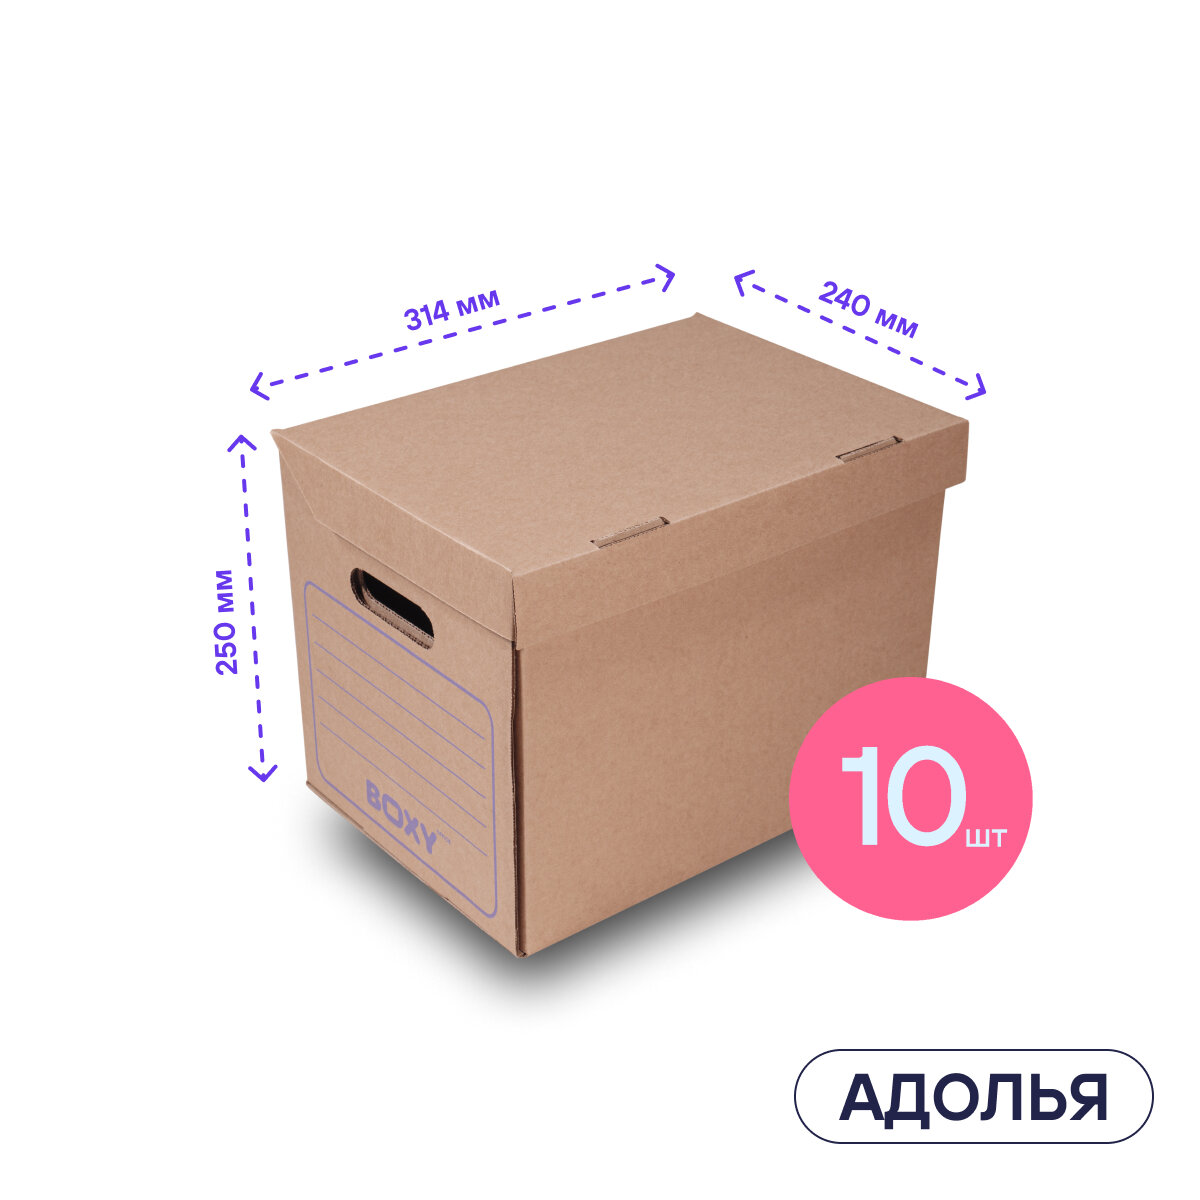 Картонная архивная коробка для офиса и дома адолья BOXY, гофрокартон, 34х25х26 см, 10 шт в упаковке